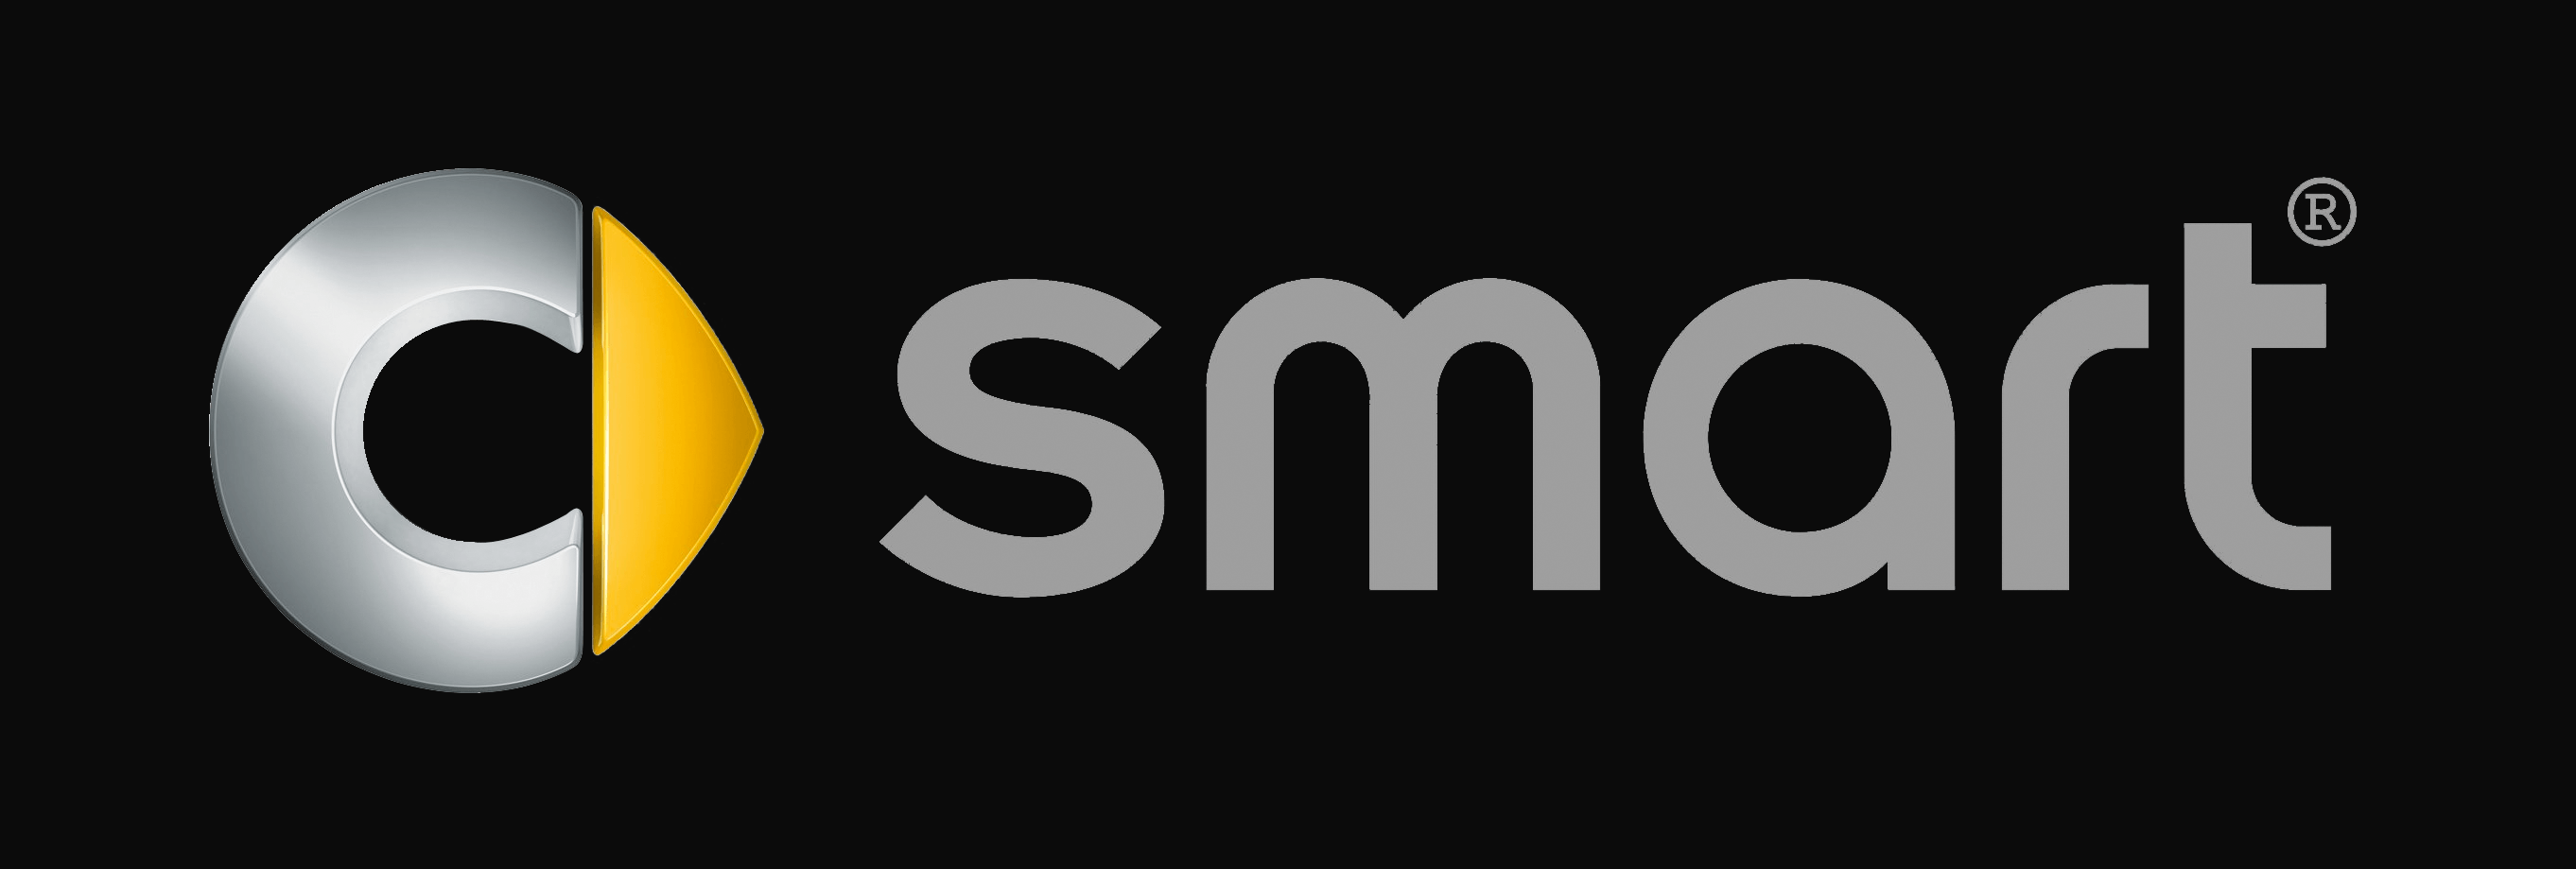 Get Smart Logo - smart Logo, smart Car Symbol Meaning And History | Car Brand Names.com